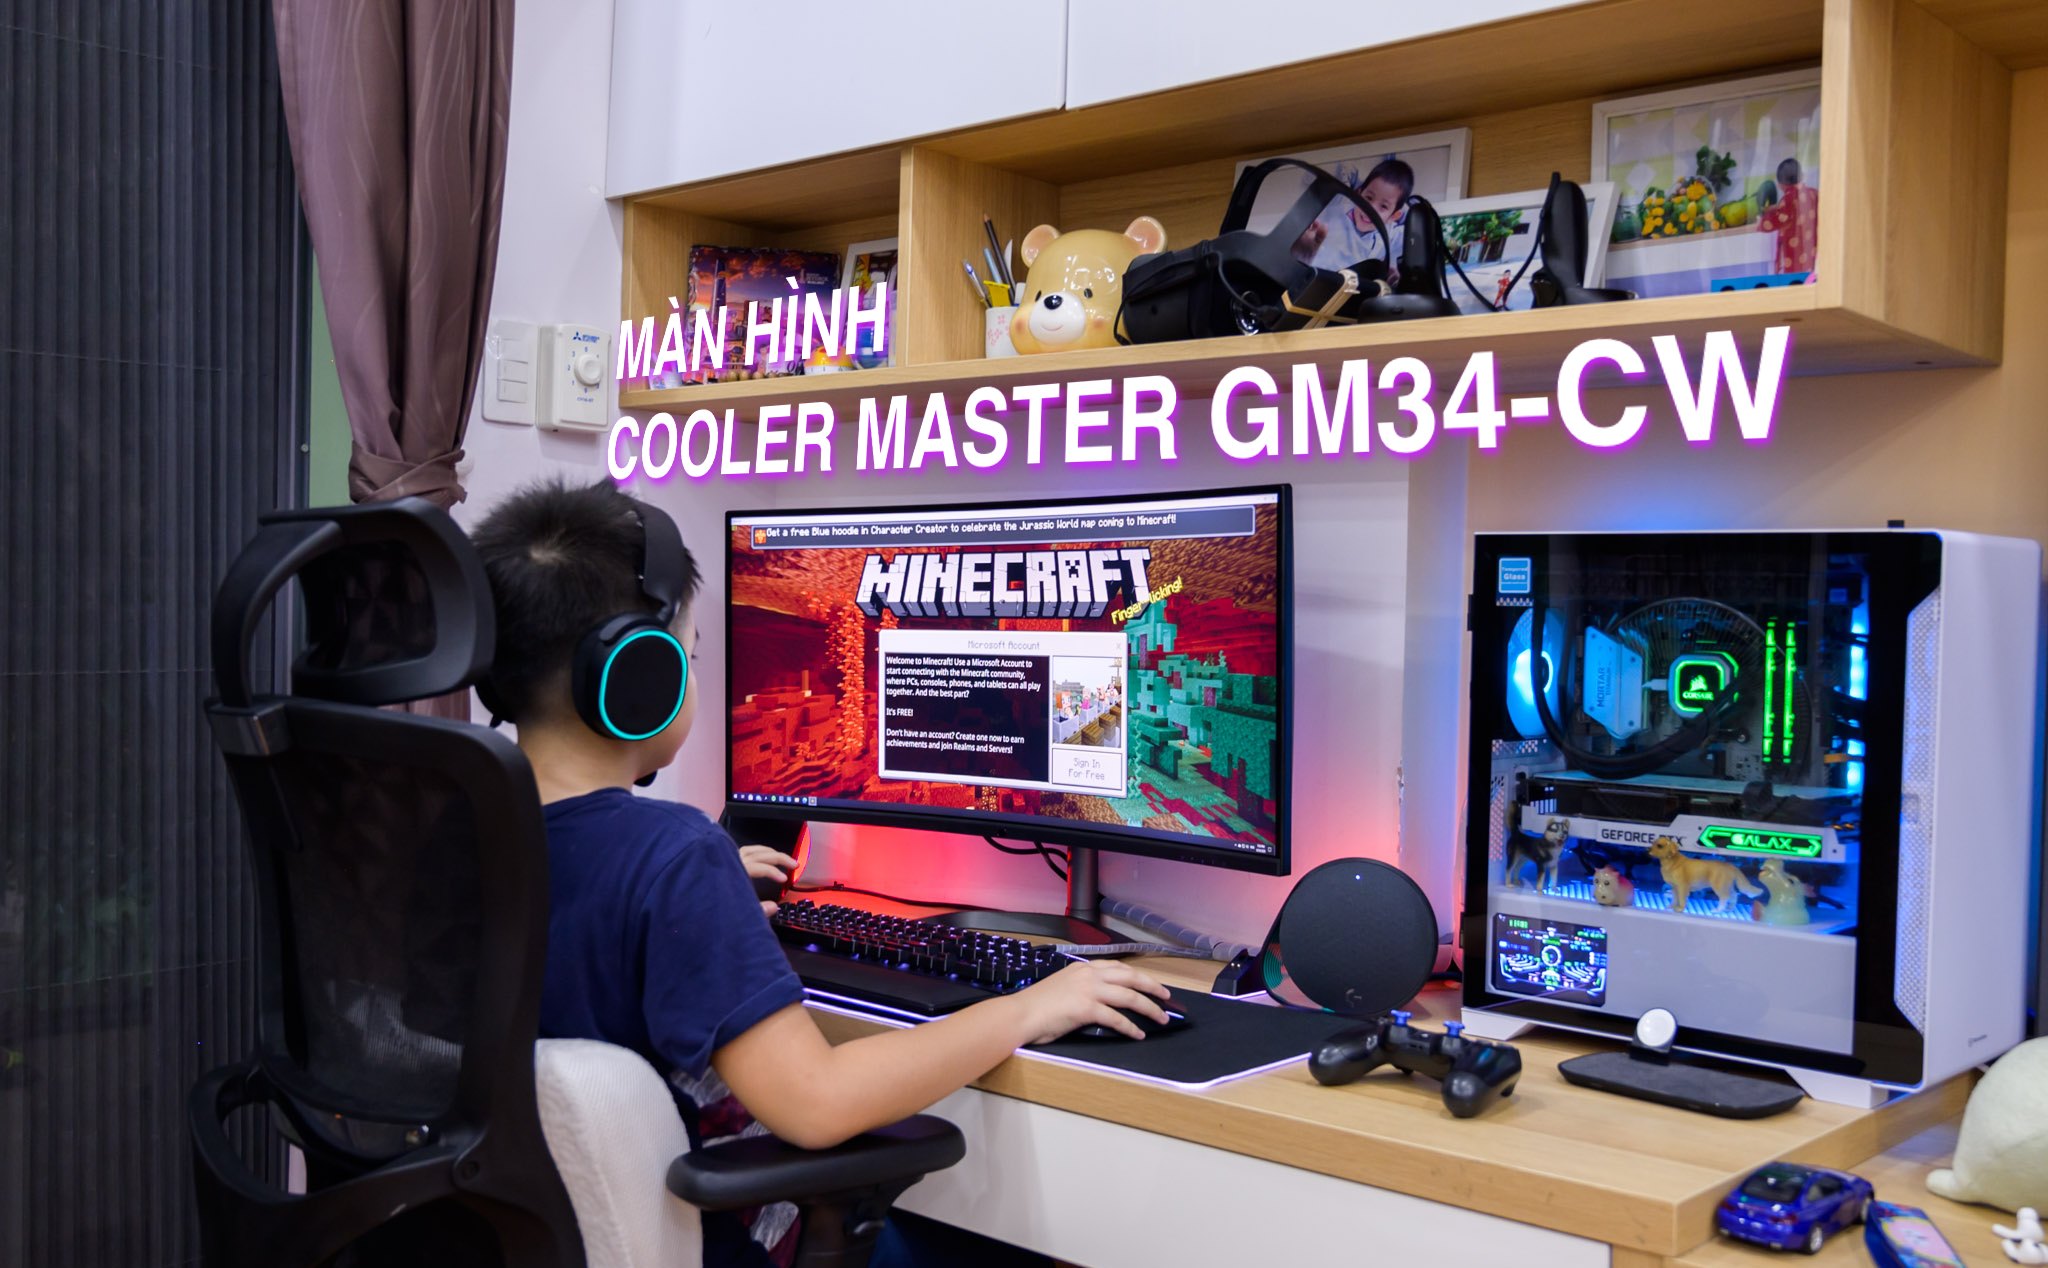 Trên tay màn hình cong gaming Cooler Master GM34-CW - 34 inch: Giá ổn, trải nghiệm xứng với mức tiền